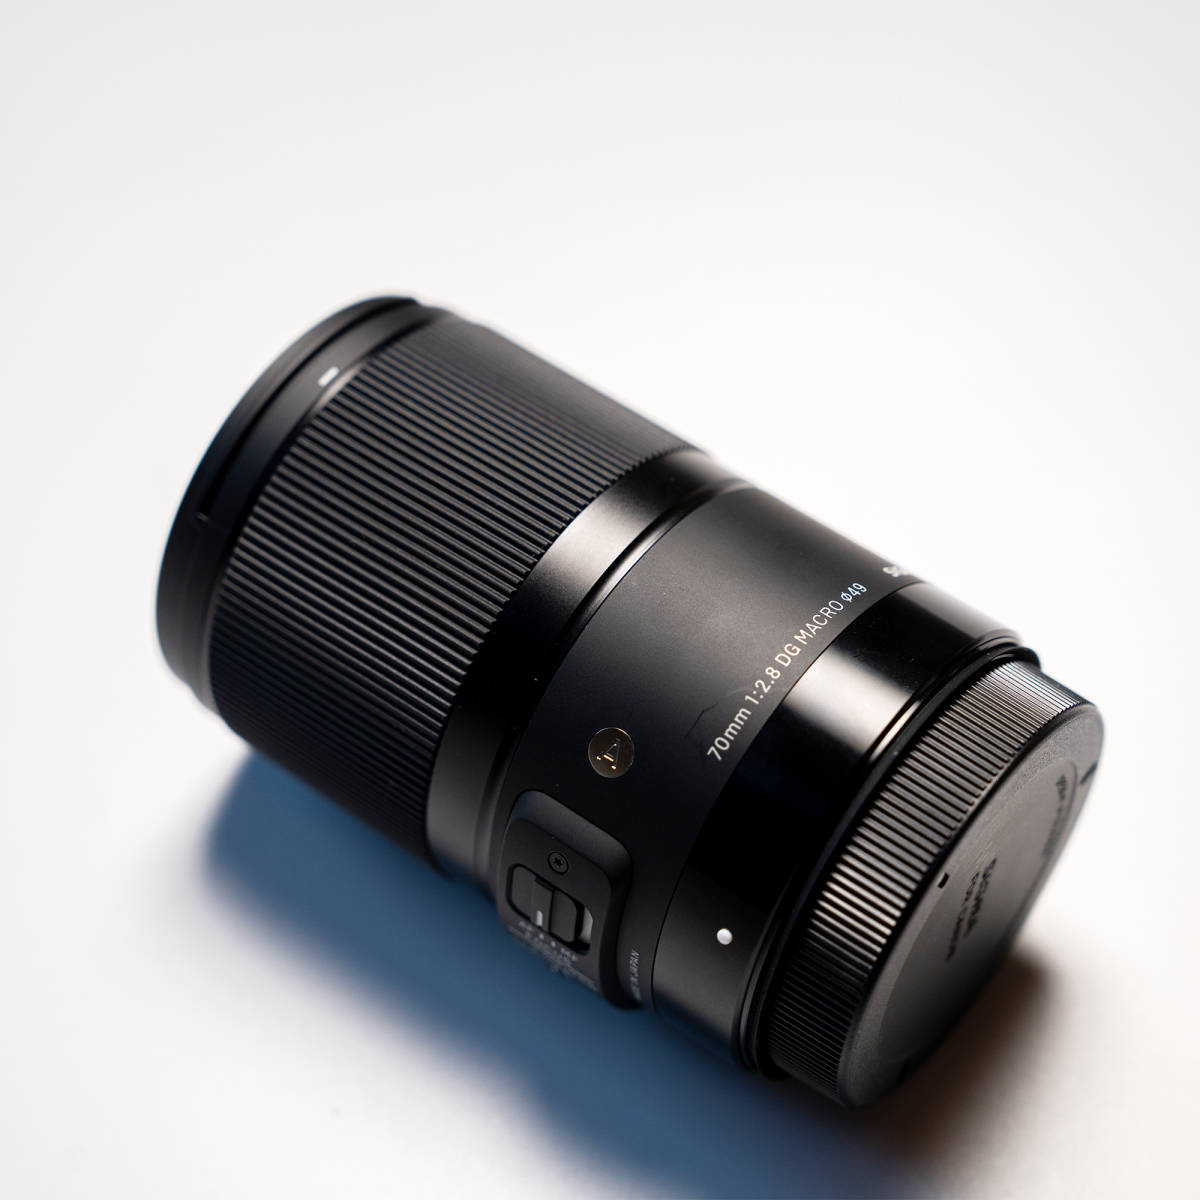  SIGMA レンズ 70mm F2.8 DG MACRO ART for CANON キヤノン マウント_画像1